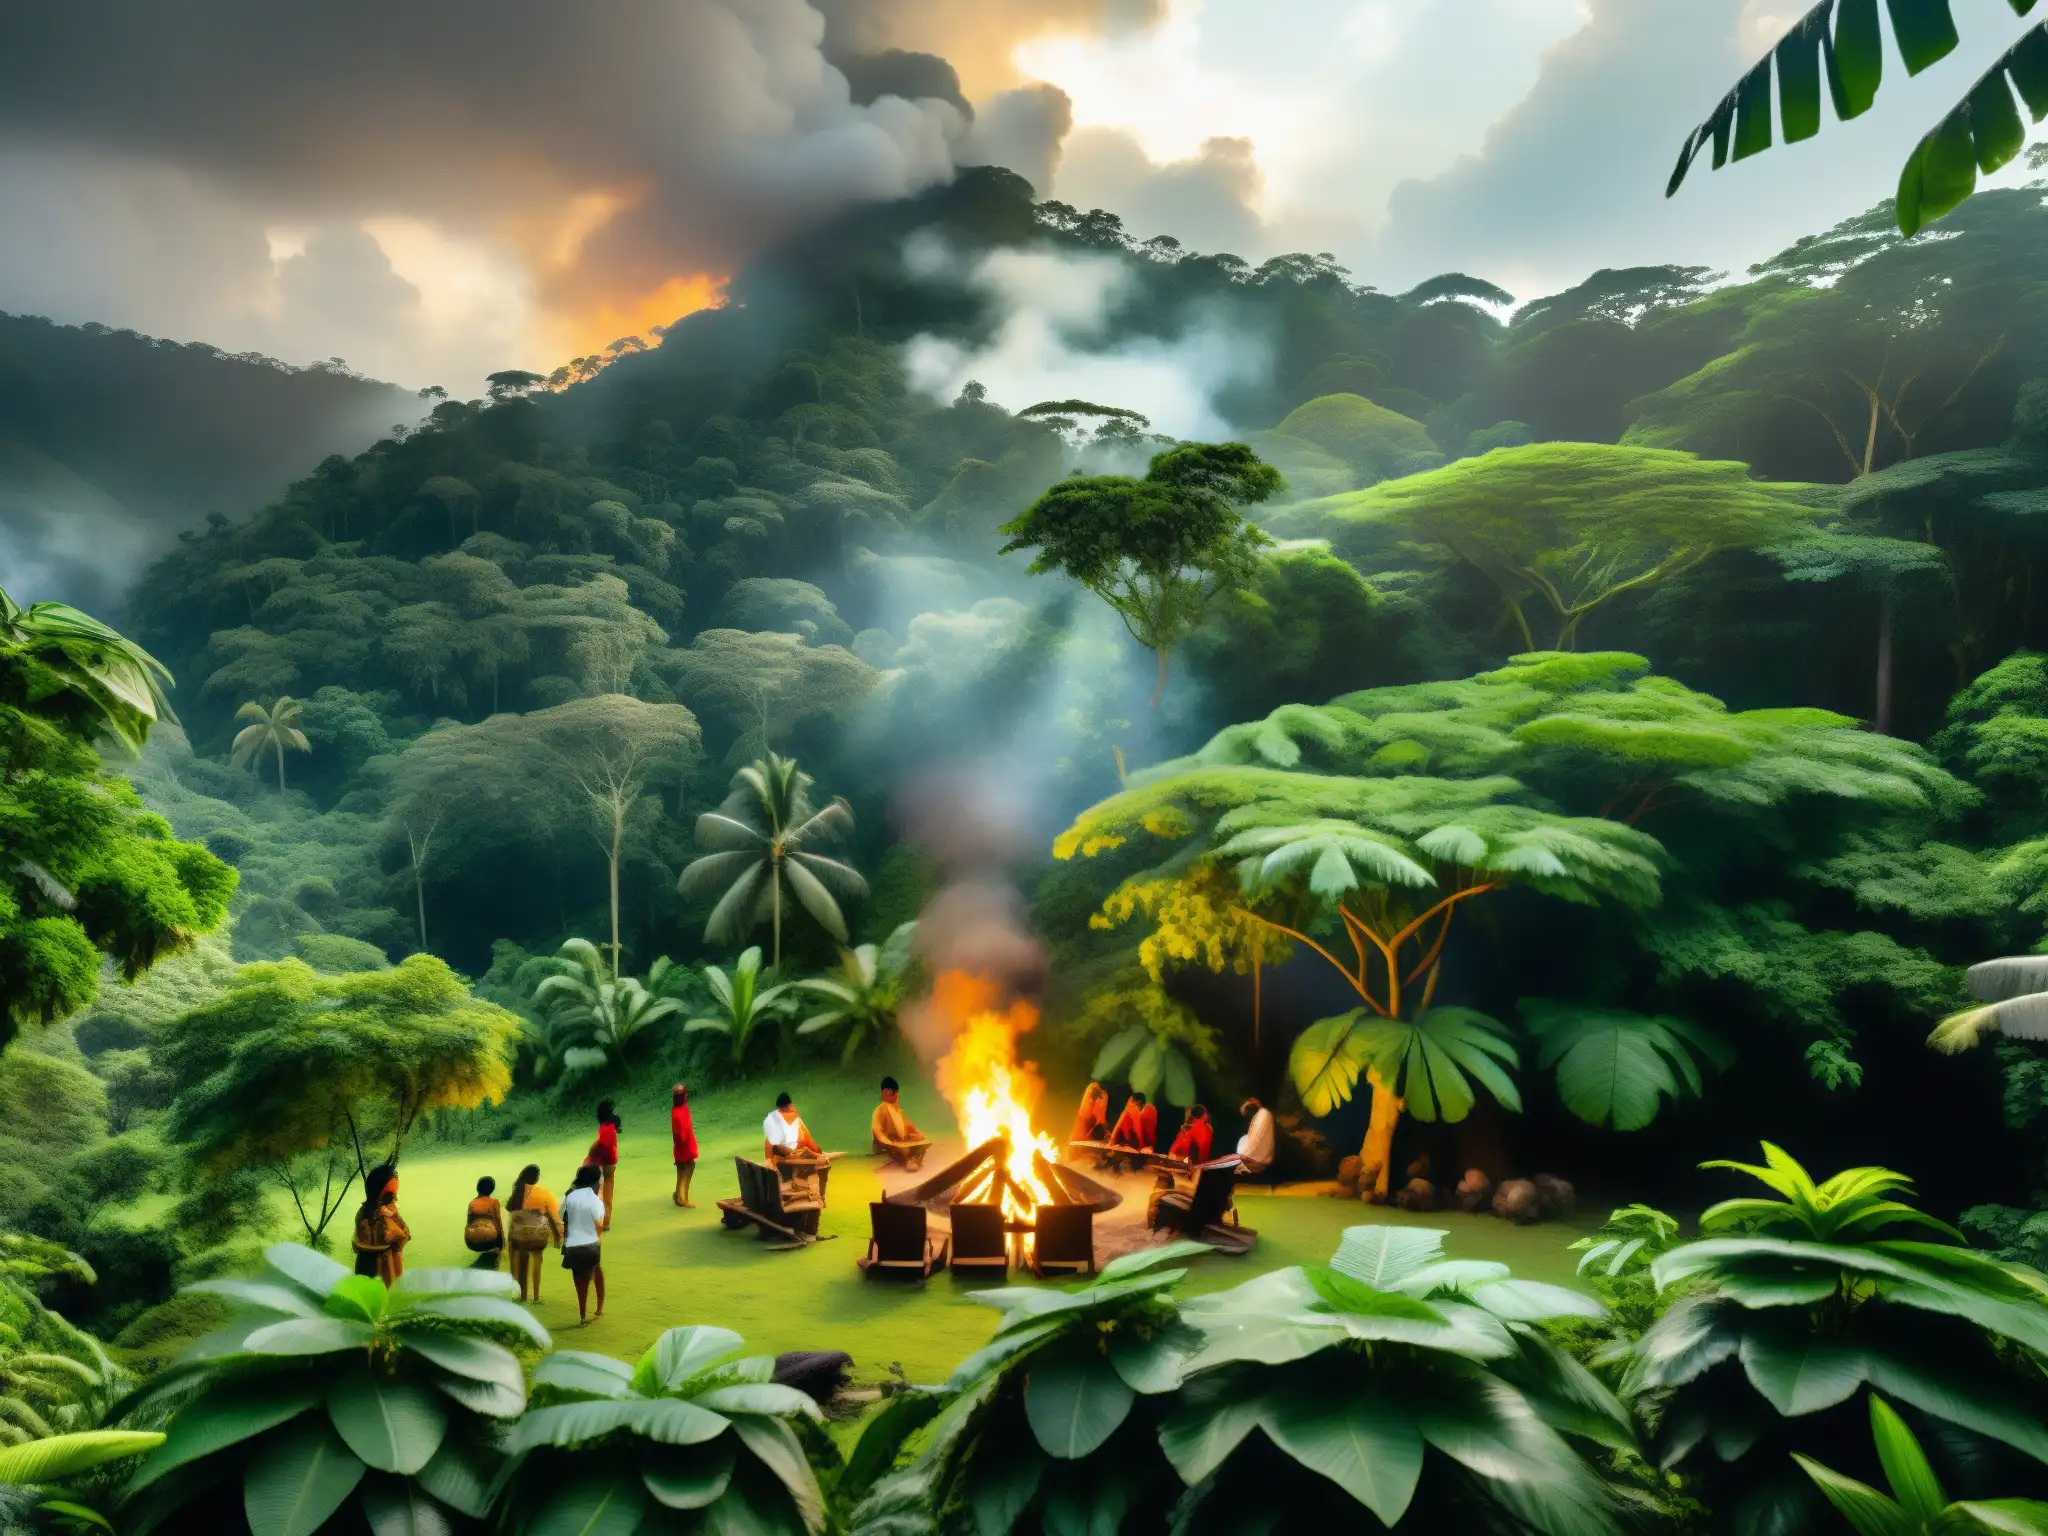 Un misterioso bosque tropical colombiano donde la Tunda y el folclore se entrelazan en historias ancestrales alrededor del fuego